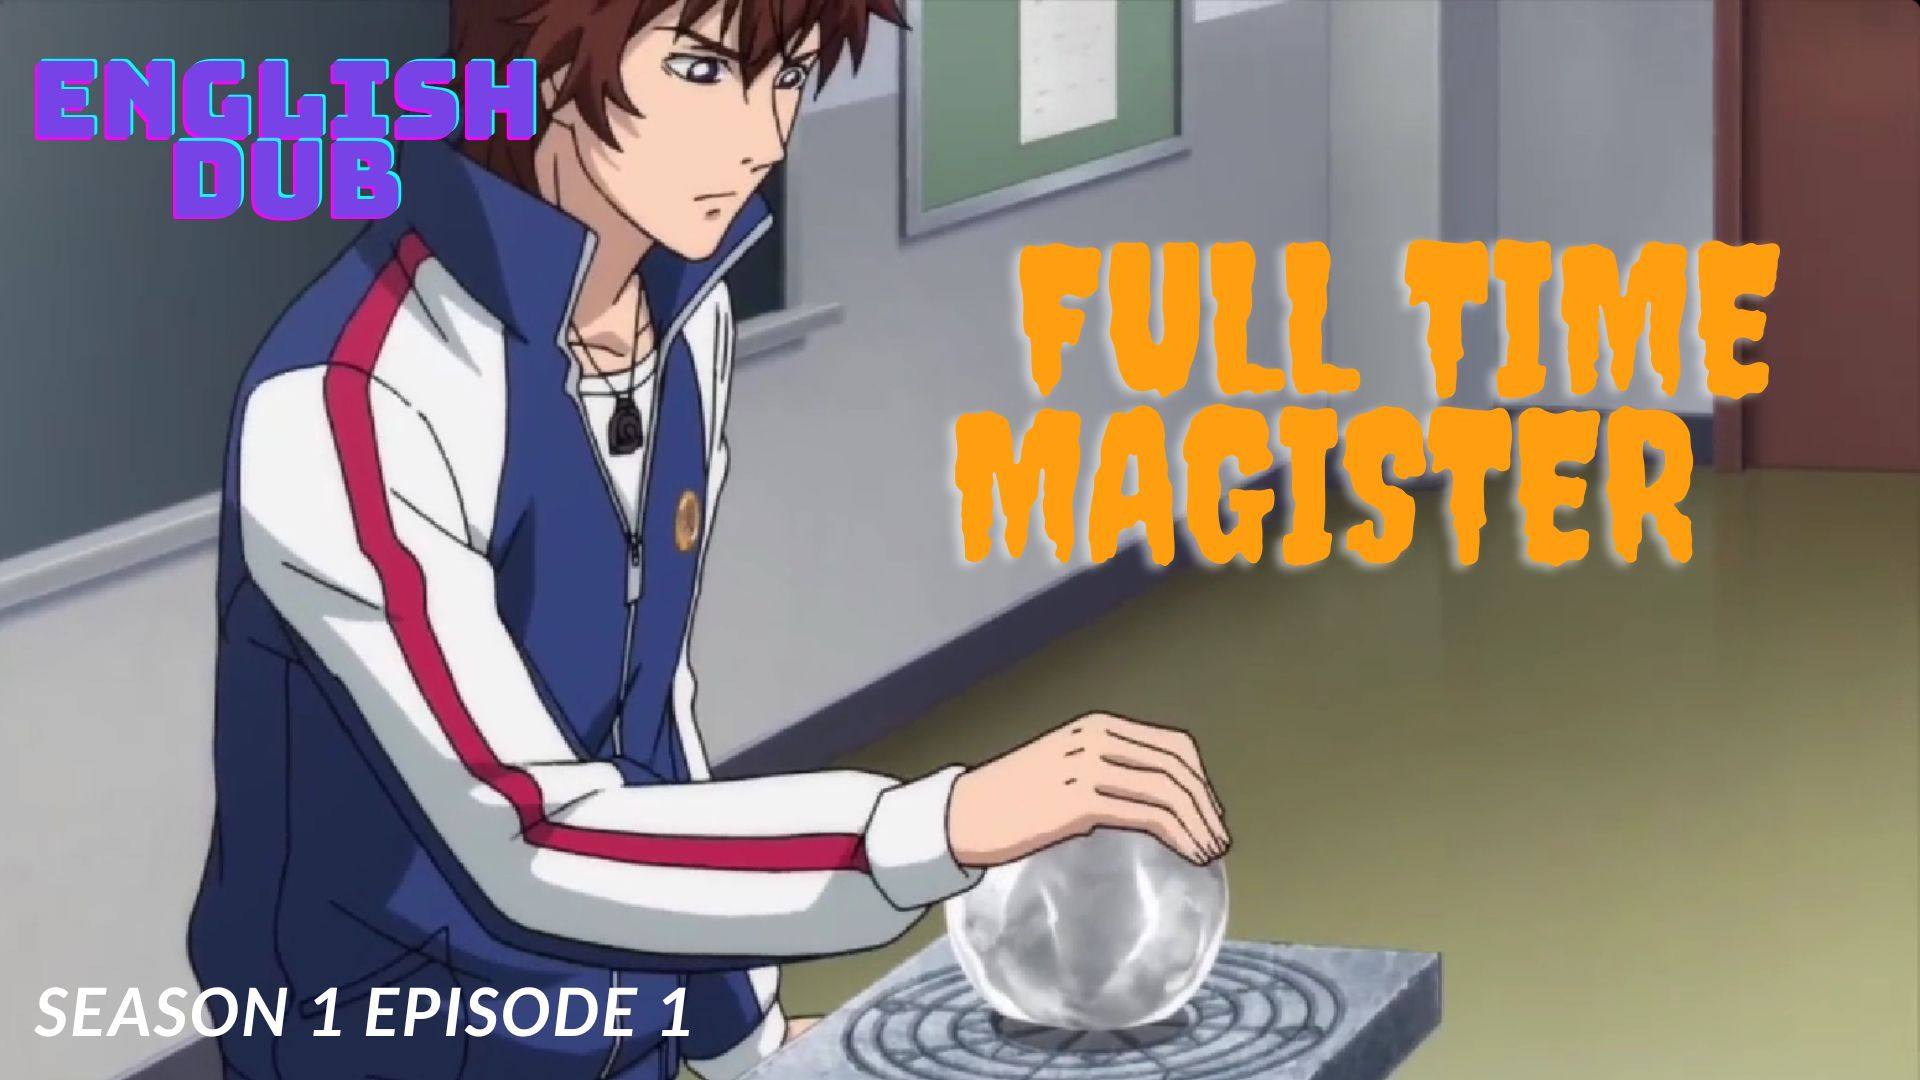 Quanzhi Fashi】 Season 4 Eps. 1~12 END - Full-Time Magister